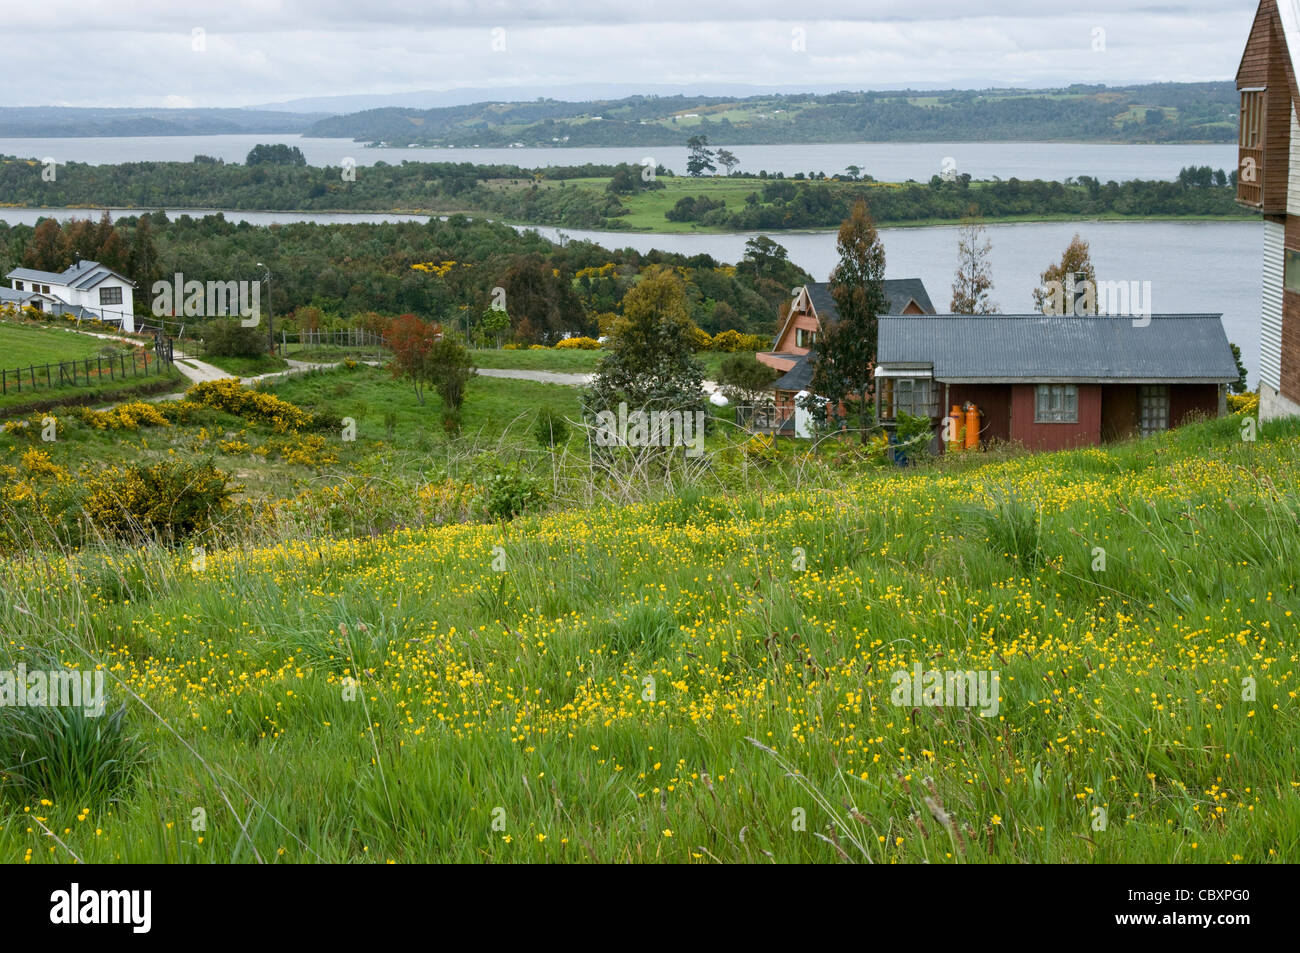 Chile. Chiloe island. Landscape. Stock Photo